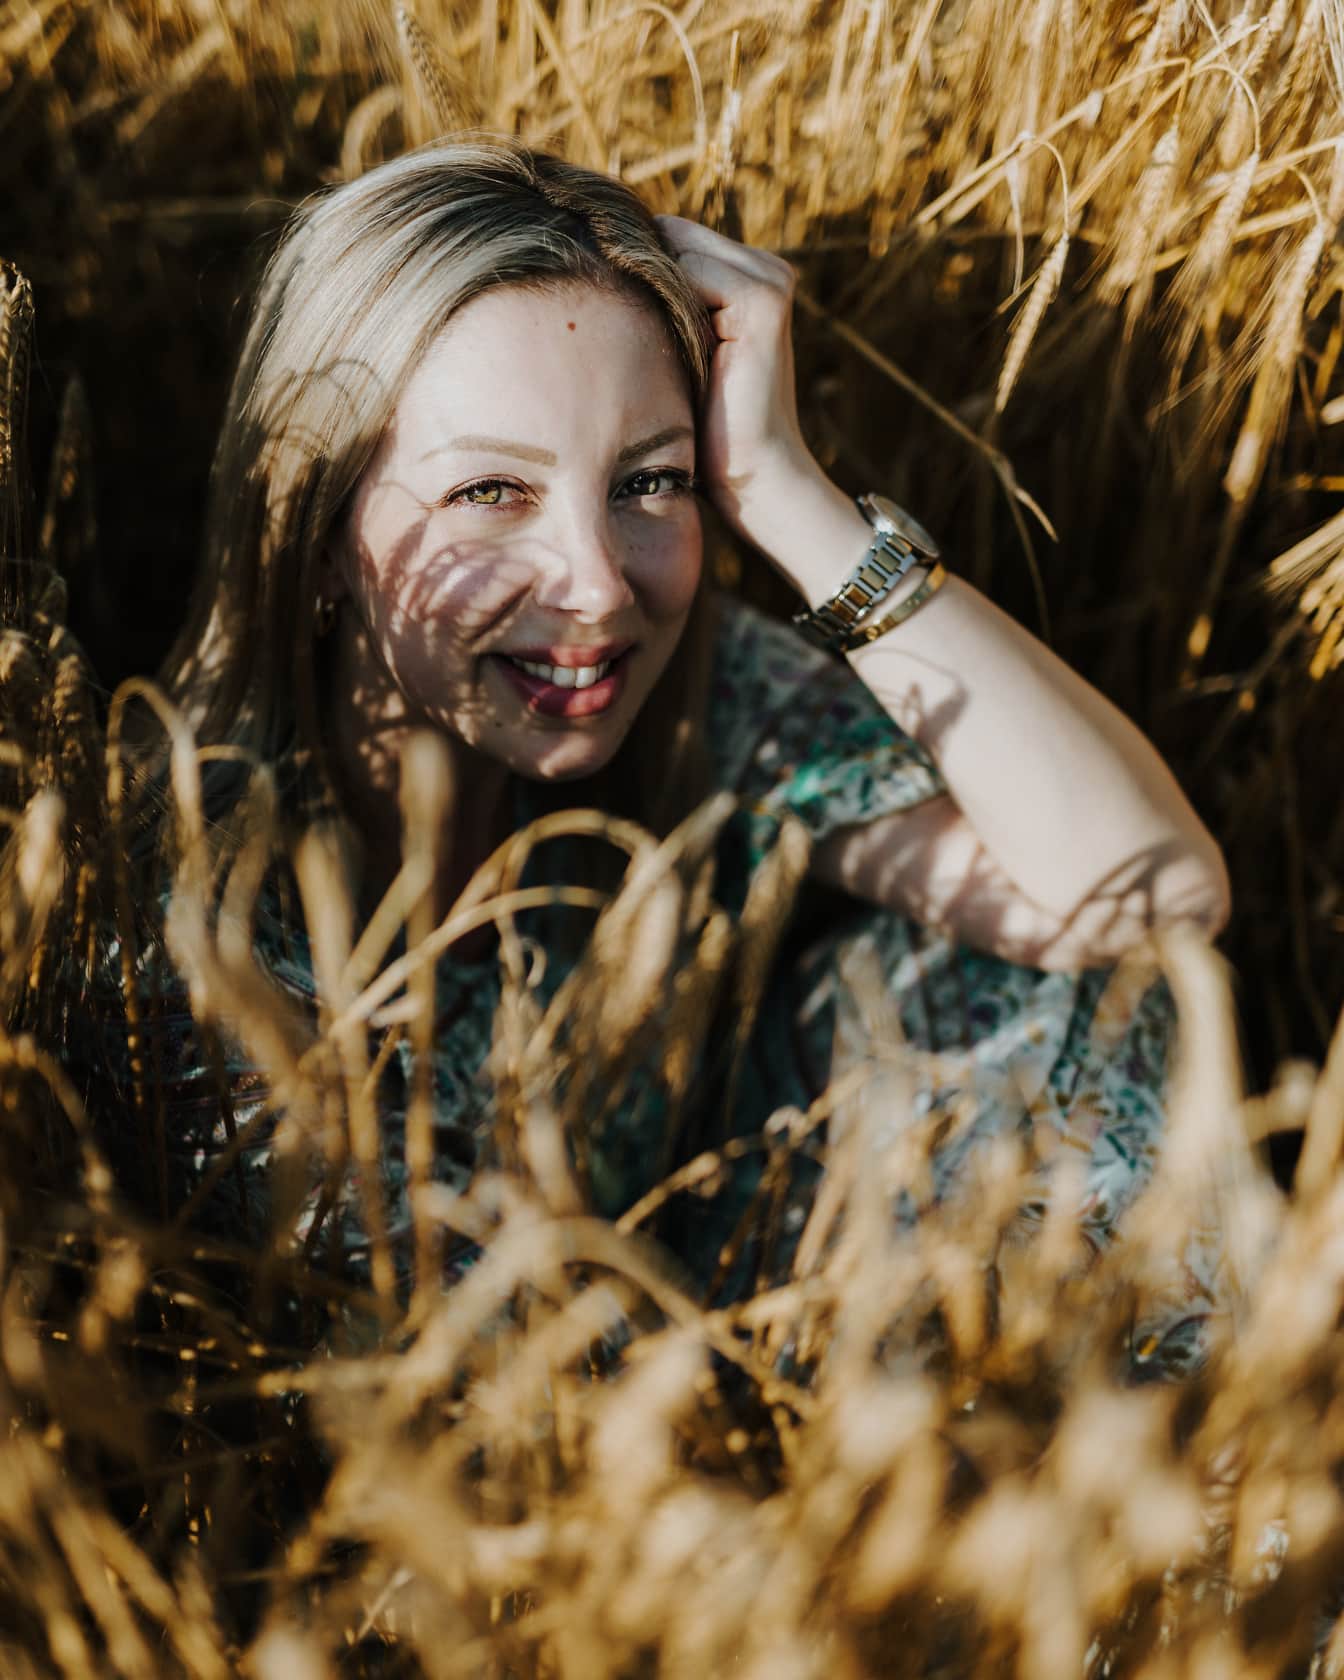 Wanita tampan duduk di ladang gandum dan tersenyum